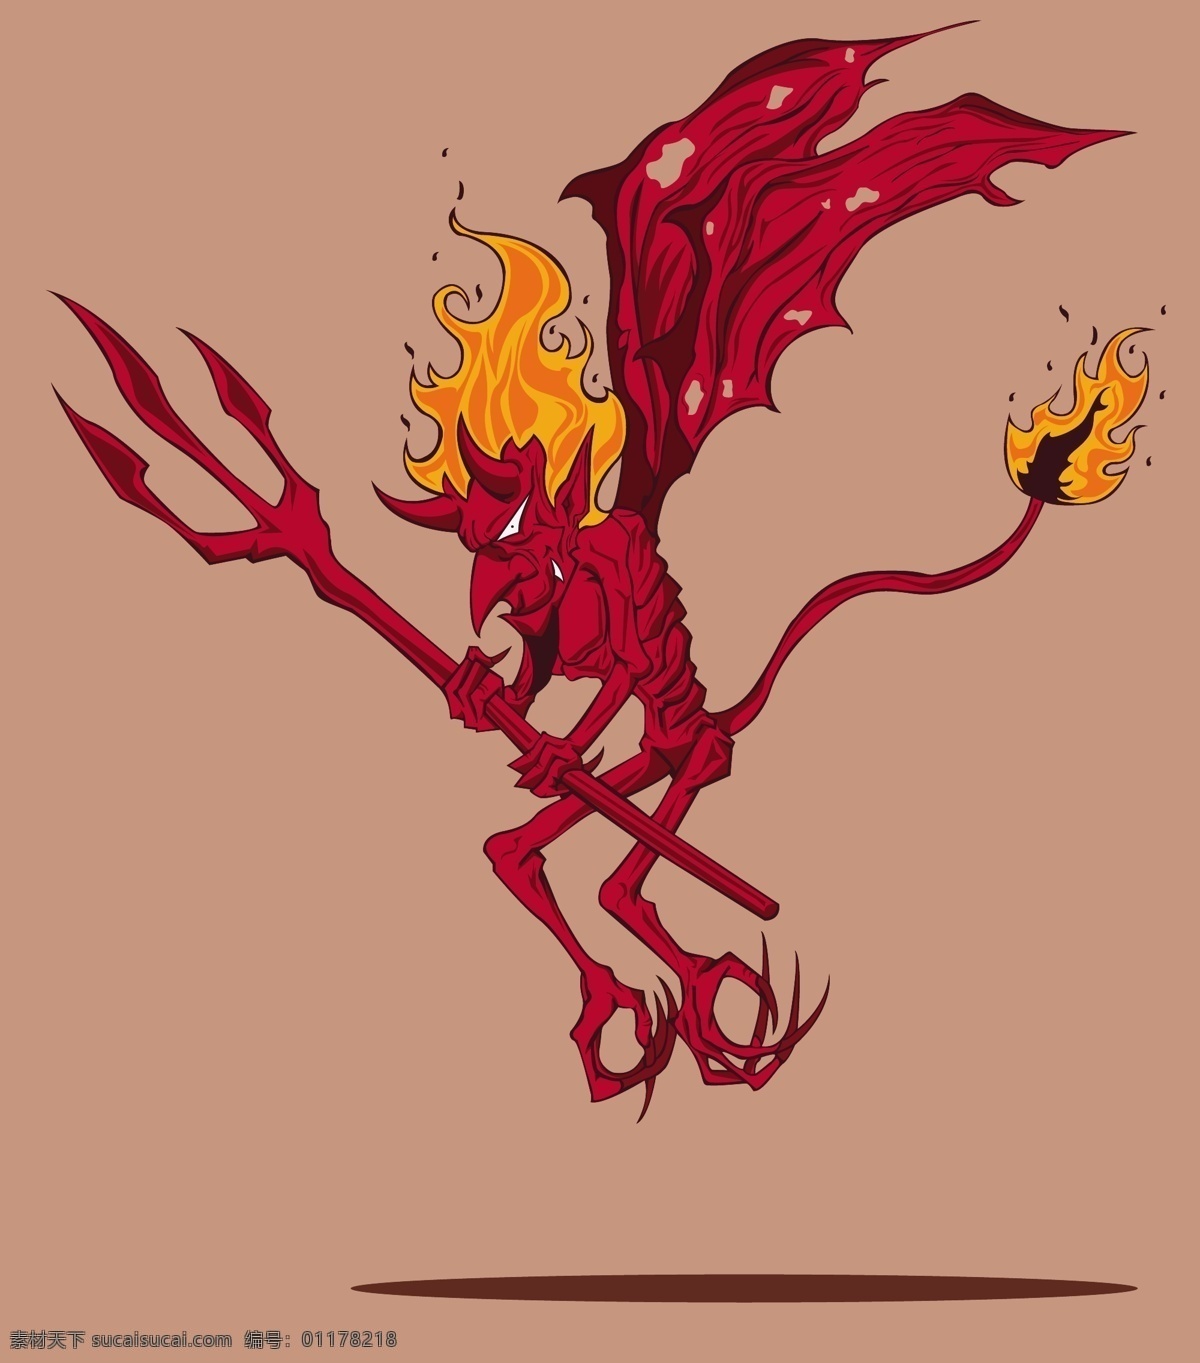 魔鬼 装饰画 火焰 恐怖 卡通设计 devil 翅膀 手绘 绘画 动漫人物 动漫动画 抽象 矢量